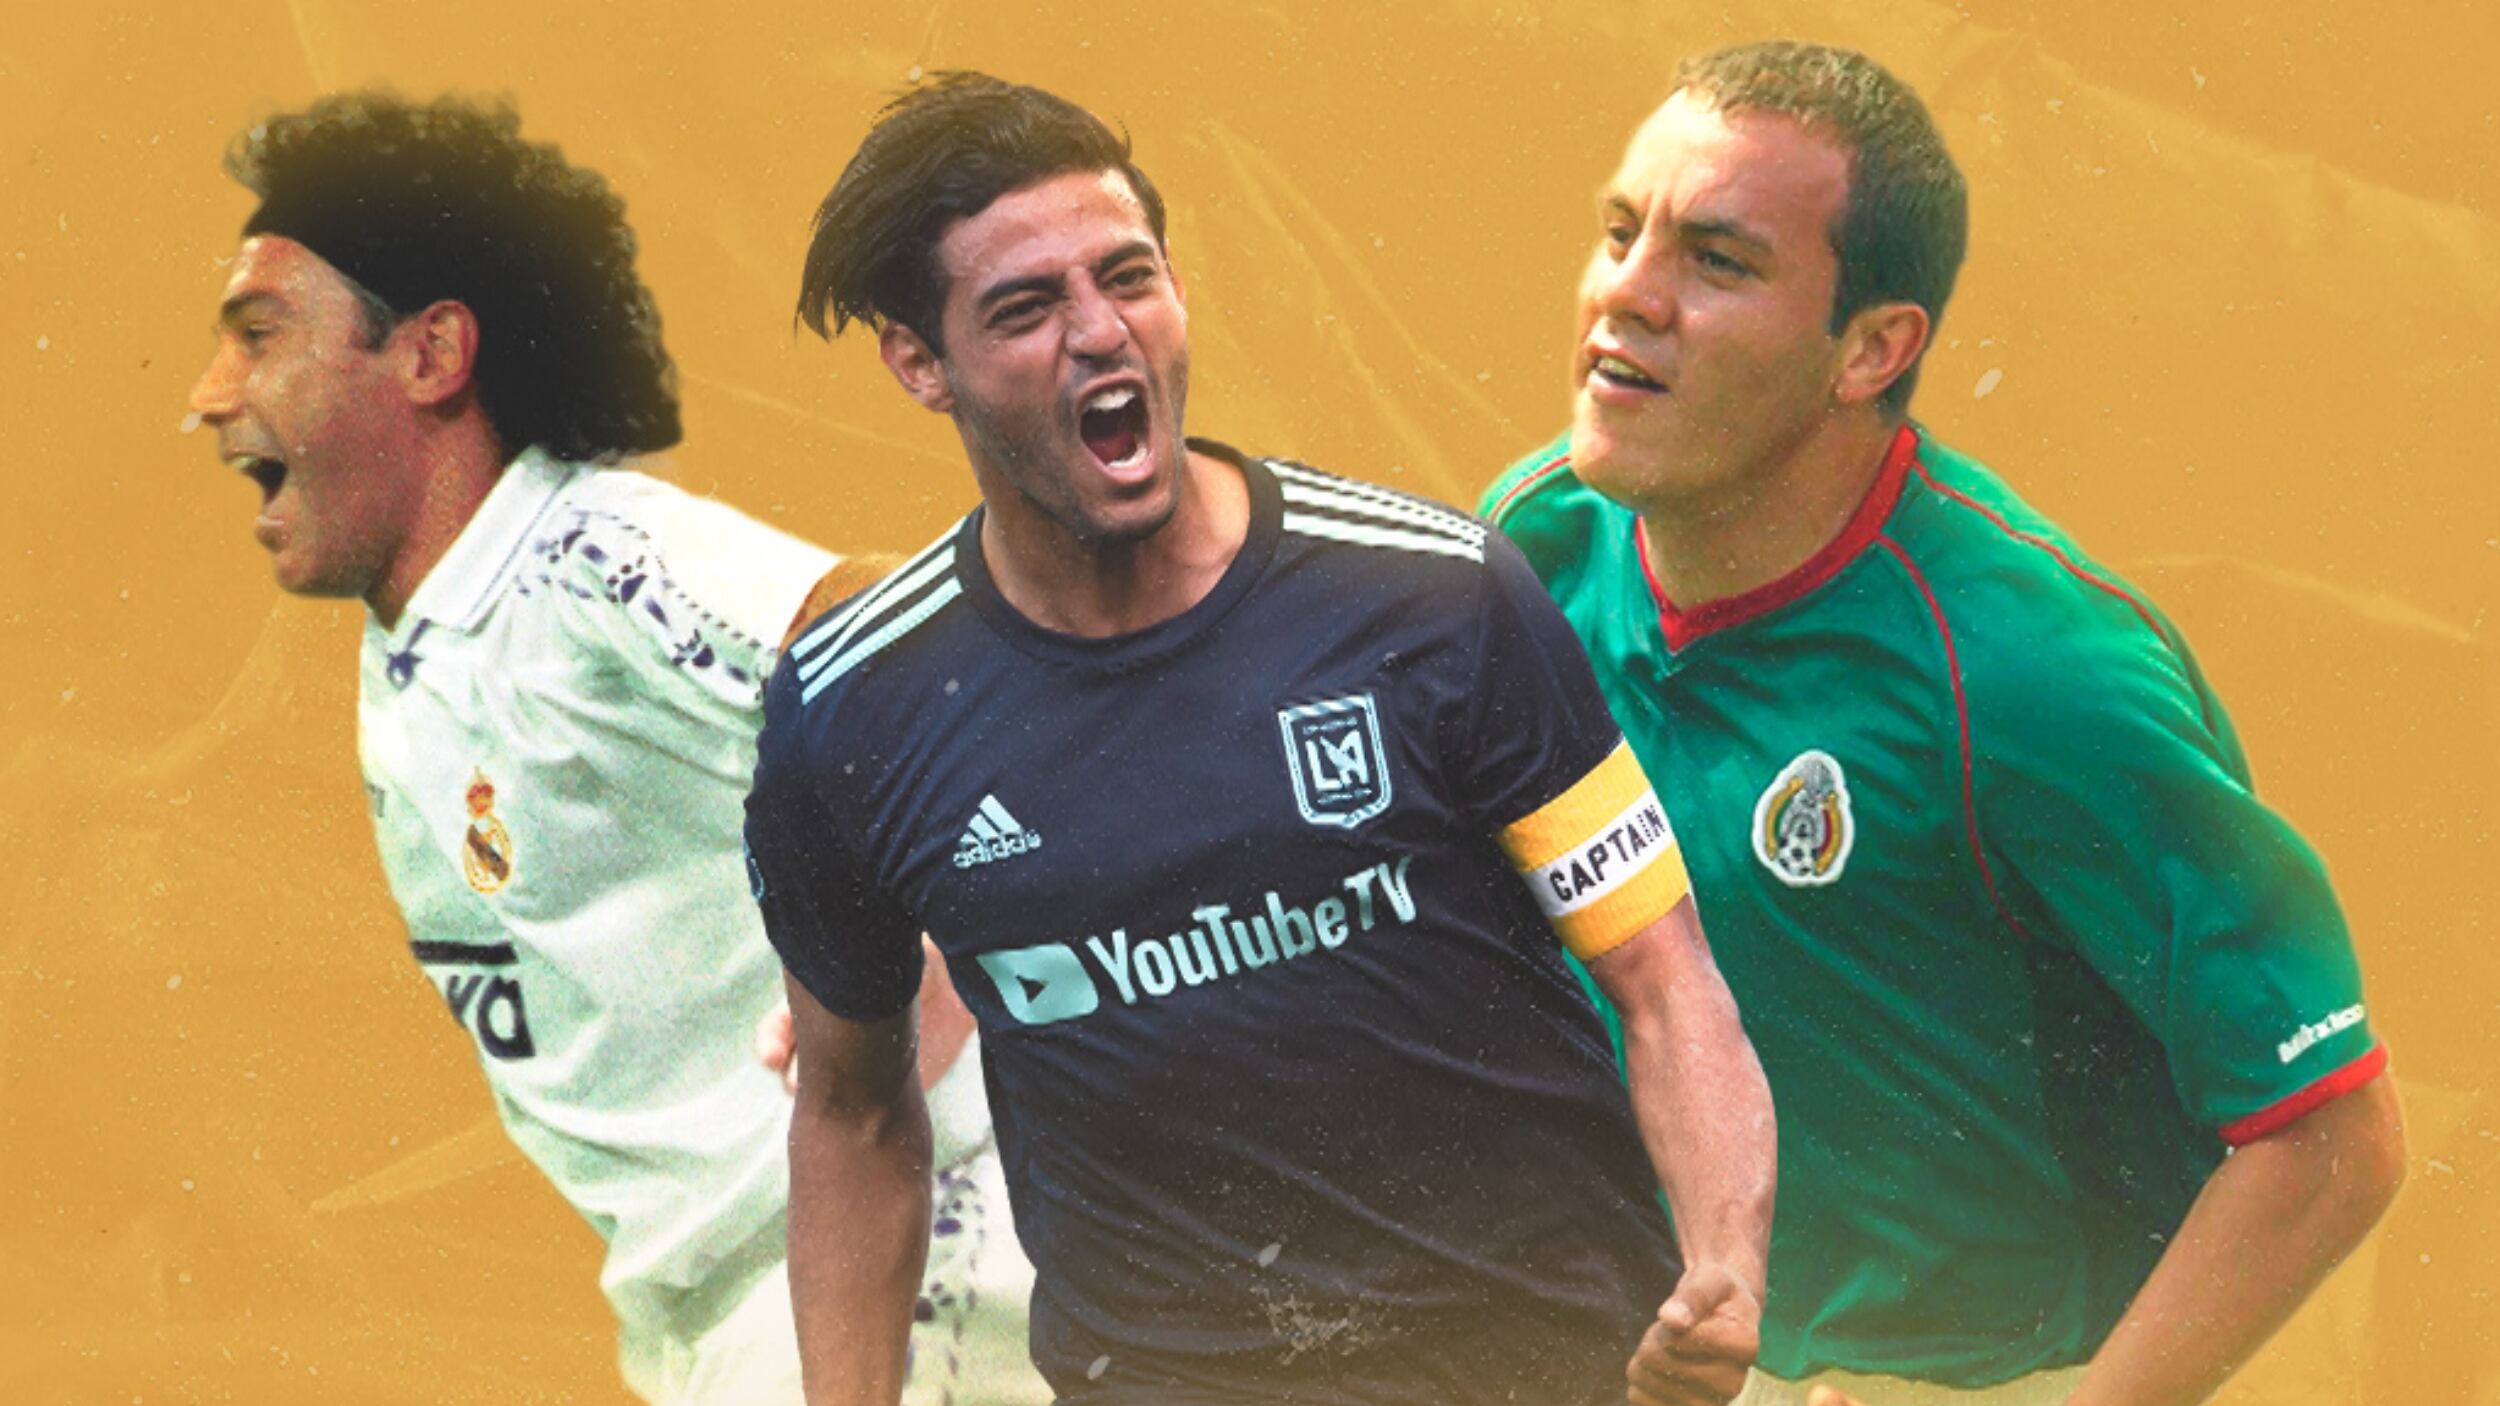 El jugador mexicano más reconocido por la FIFA, "qué jugador", no es Hugo Sánchez